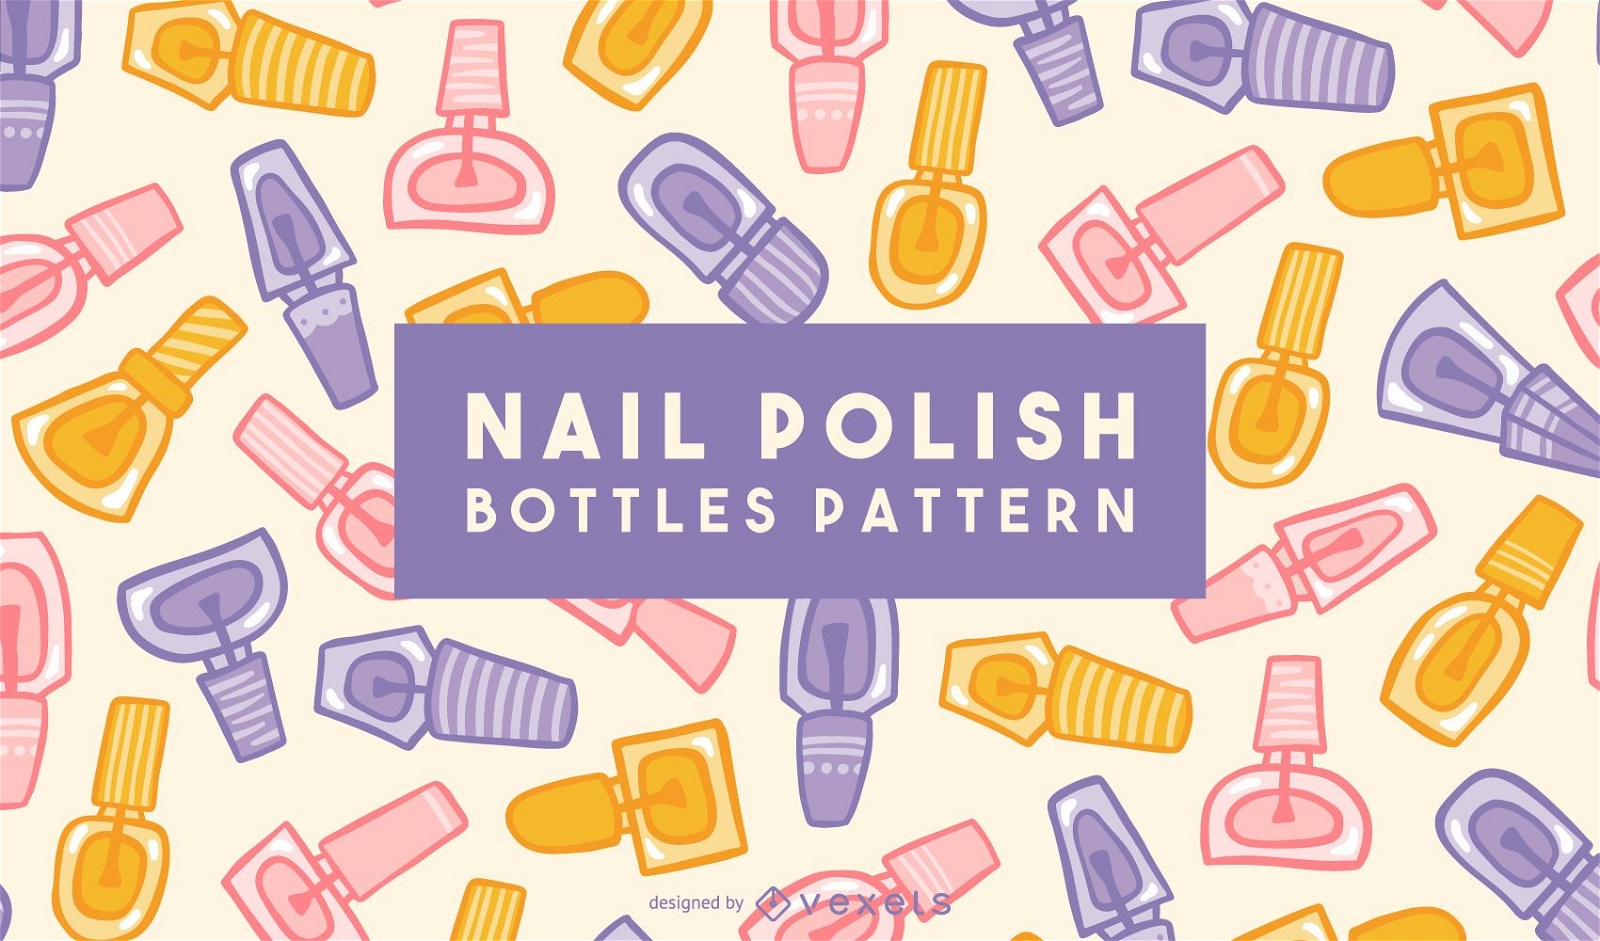 Nail polish bottles pattern design